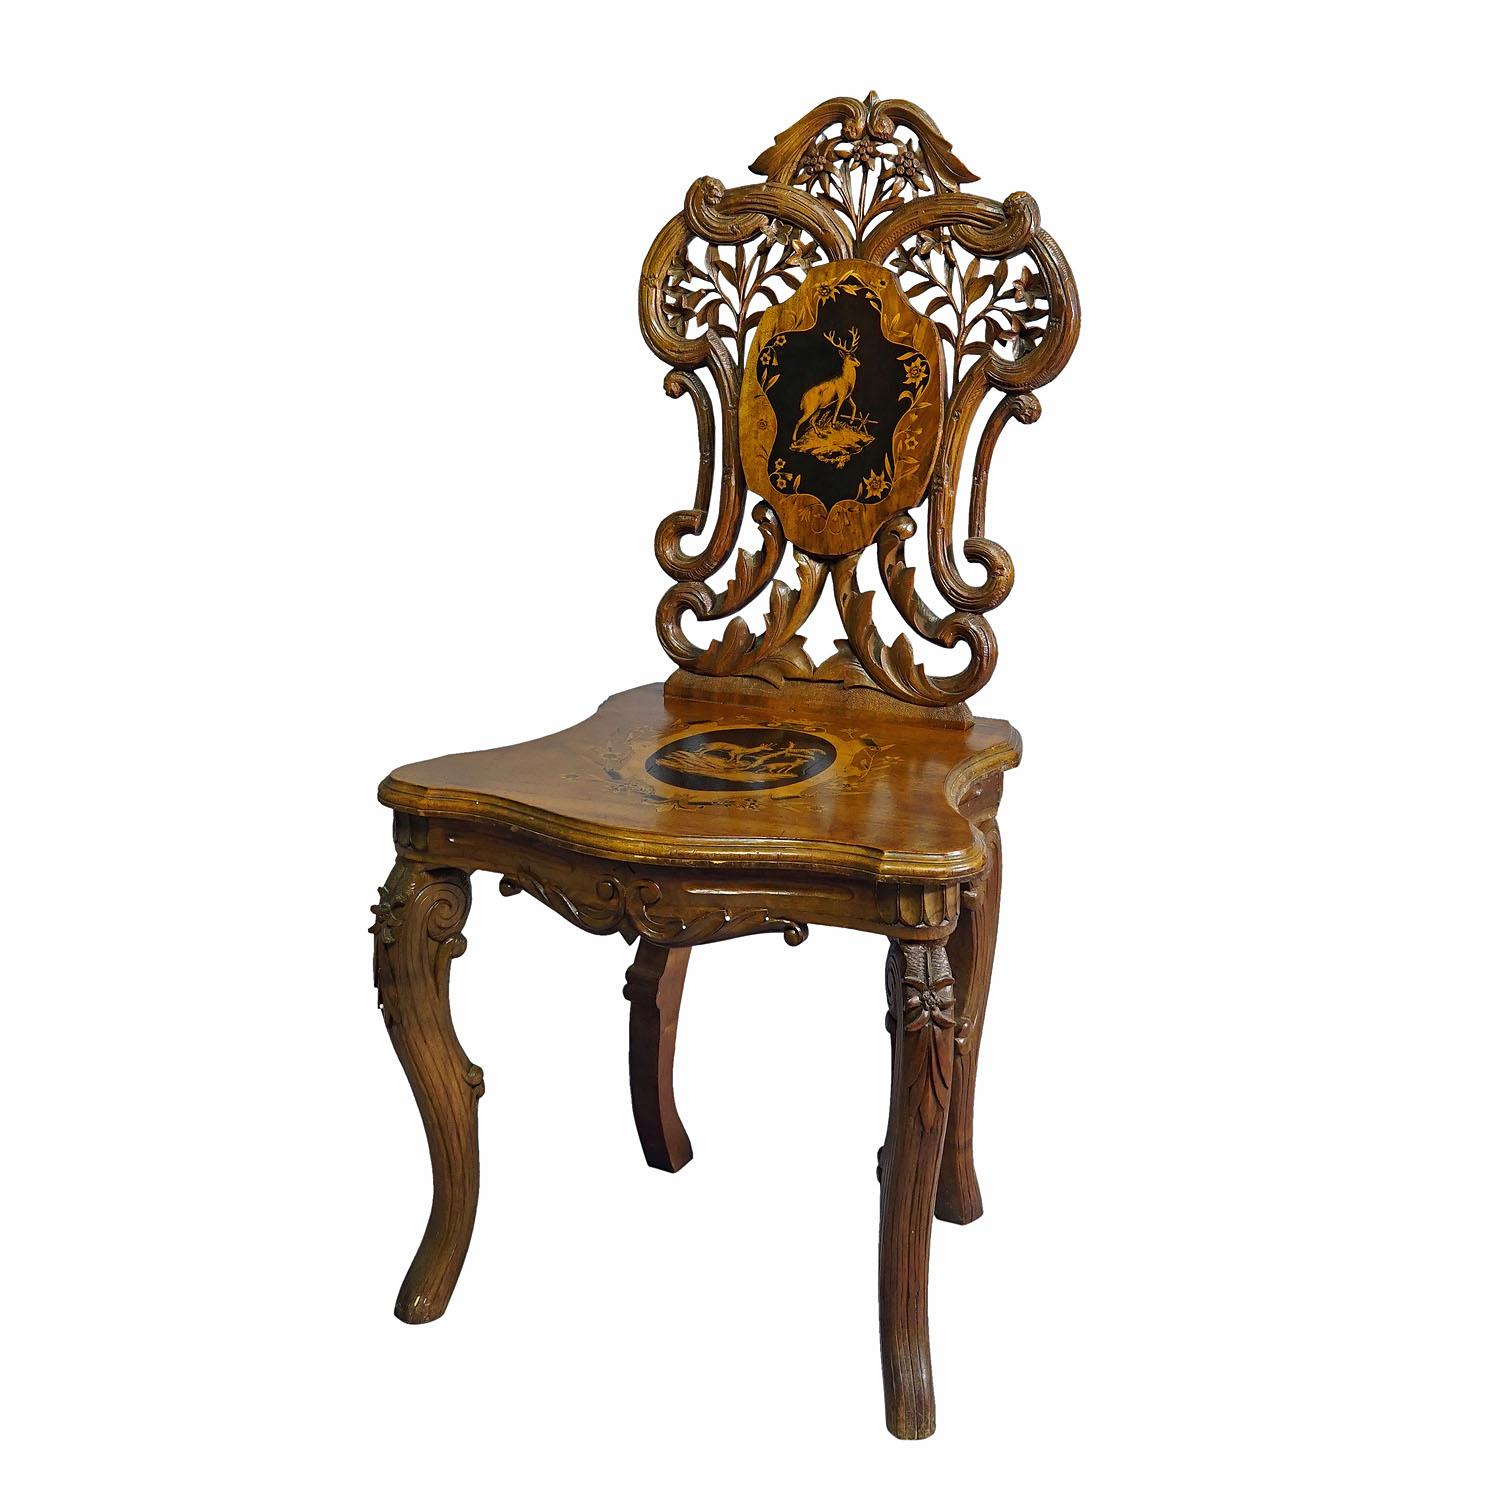 Chaise en marqueterie Nutwood Edelweis Suisse Brienz 1900

Magnifique chaise en bois de noyer incrusté, décorée de scènes incrustées et peintes représentant des chamois, des cerfs et des fleurs d'edelweis. Entouré d'une marqueterie d'ébène et de